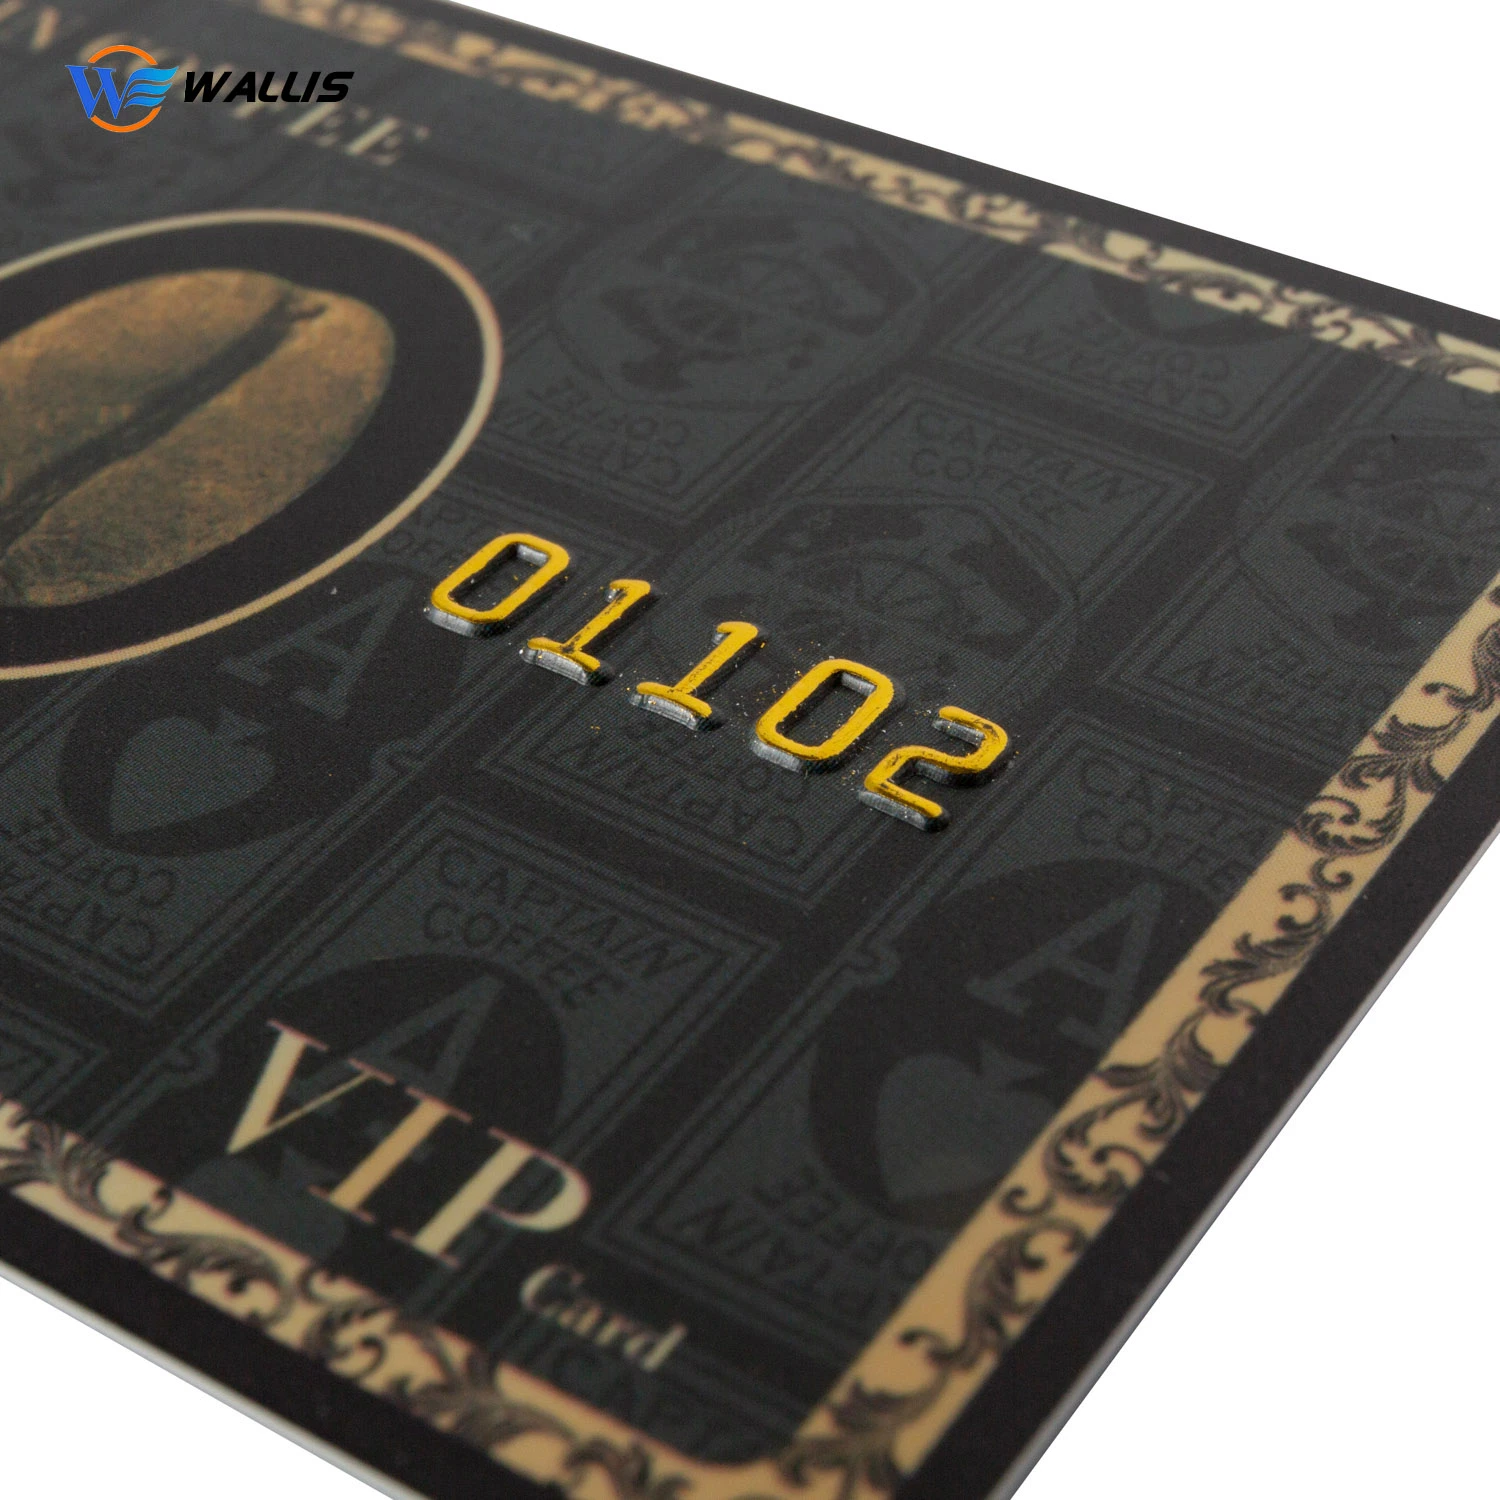 Échantillon employé d'adhésion Gold VIP gratuit Couleur de base Remise d'identification de carte plastique PVC